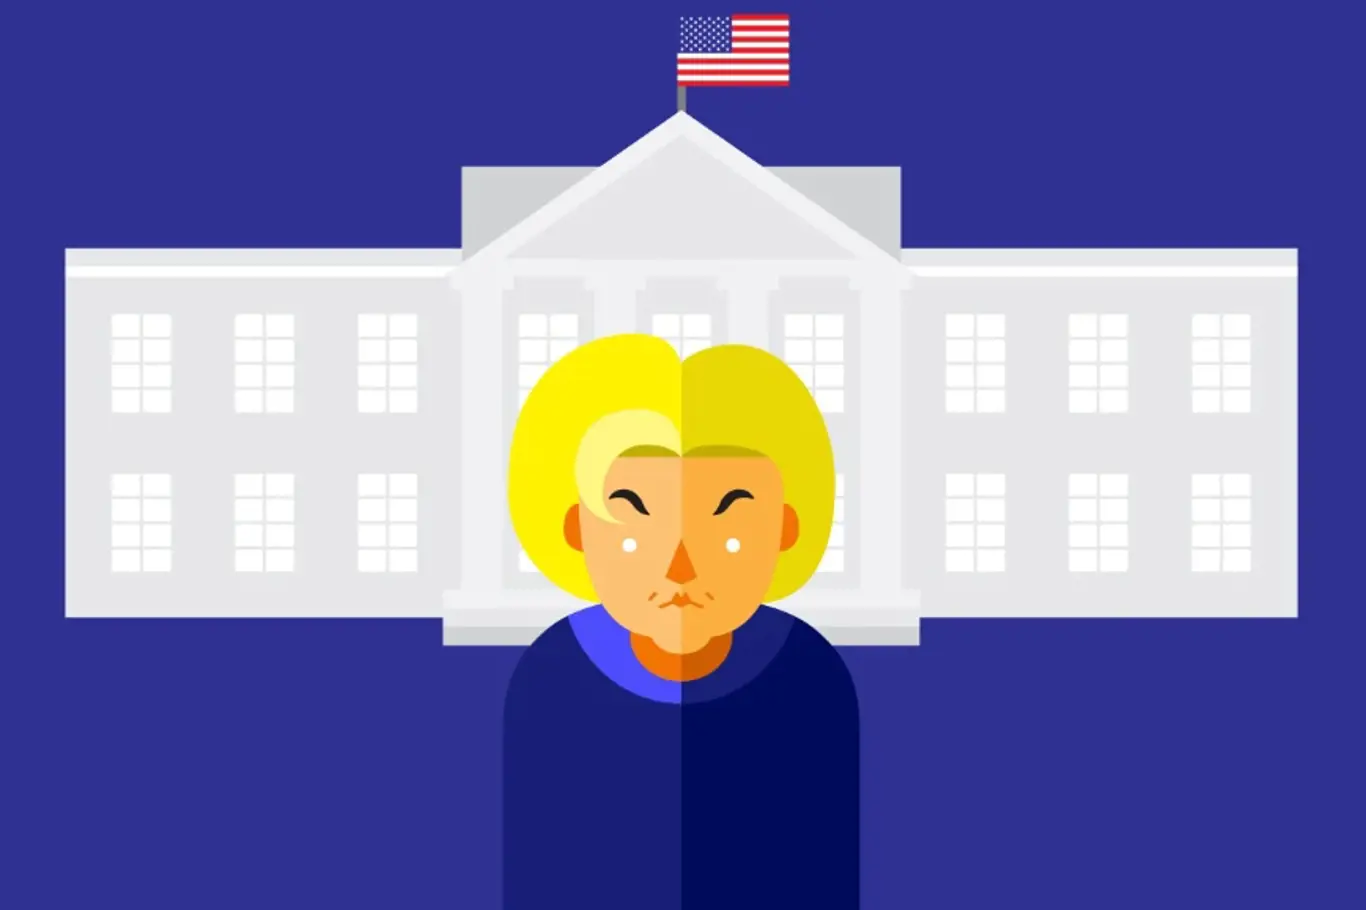 Hillary Clintonová má zkušenosti s vedením federálního úřadu. Pomůže jí to? 